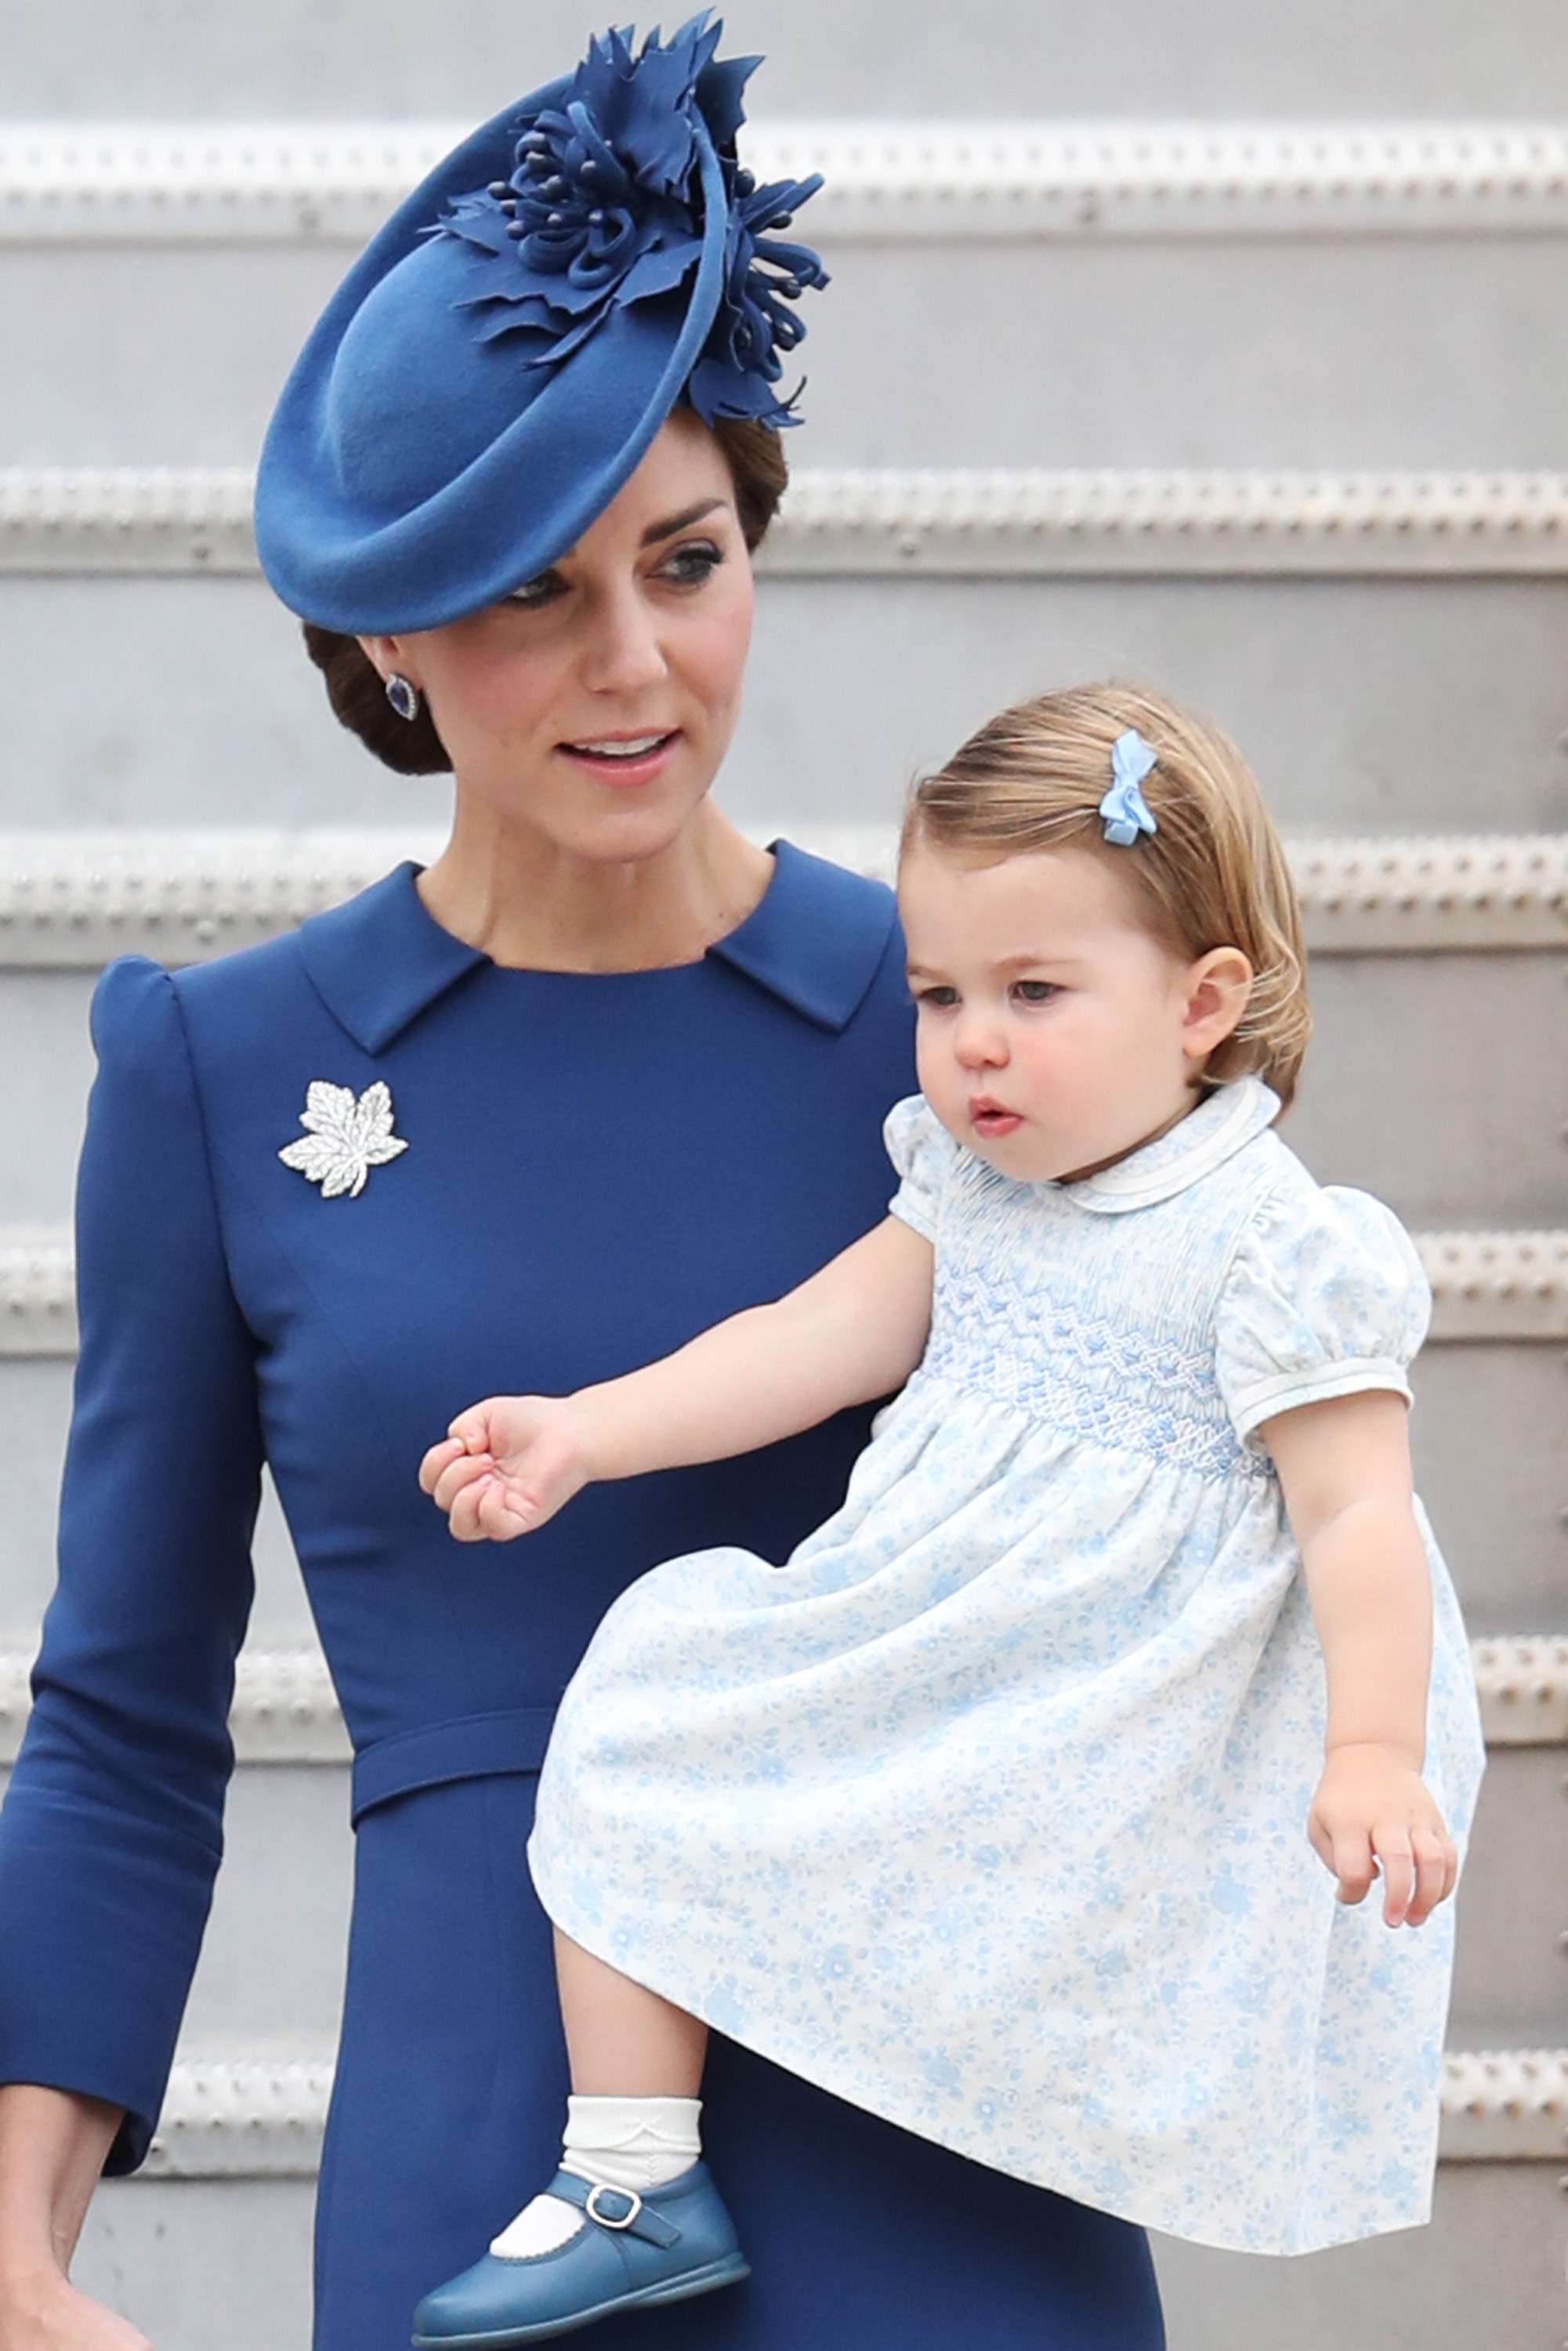 A princesa Charlotte apareceu em um vestido floral azul bebê e ficou ainda mais fofa com lacinho no cabelo! Foto: